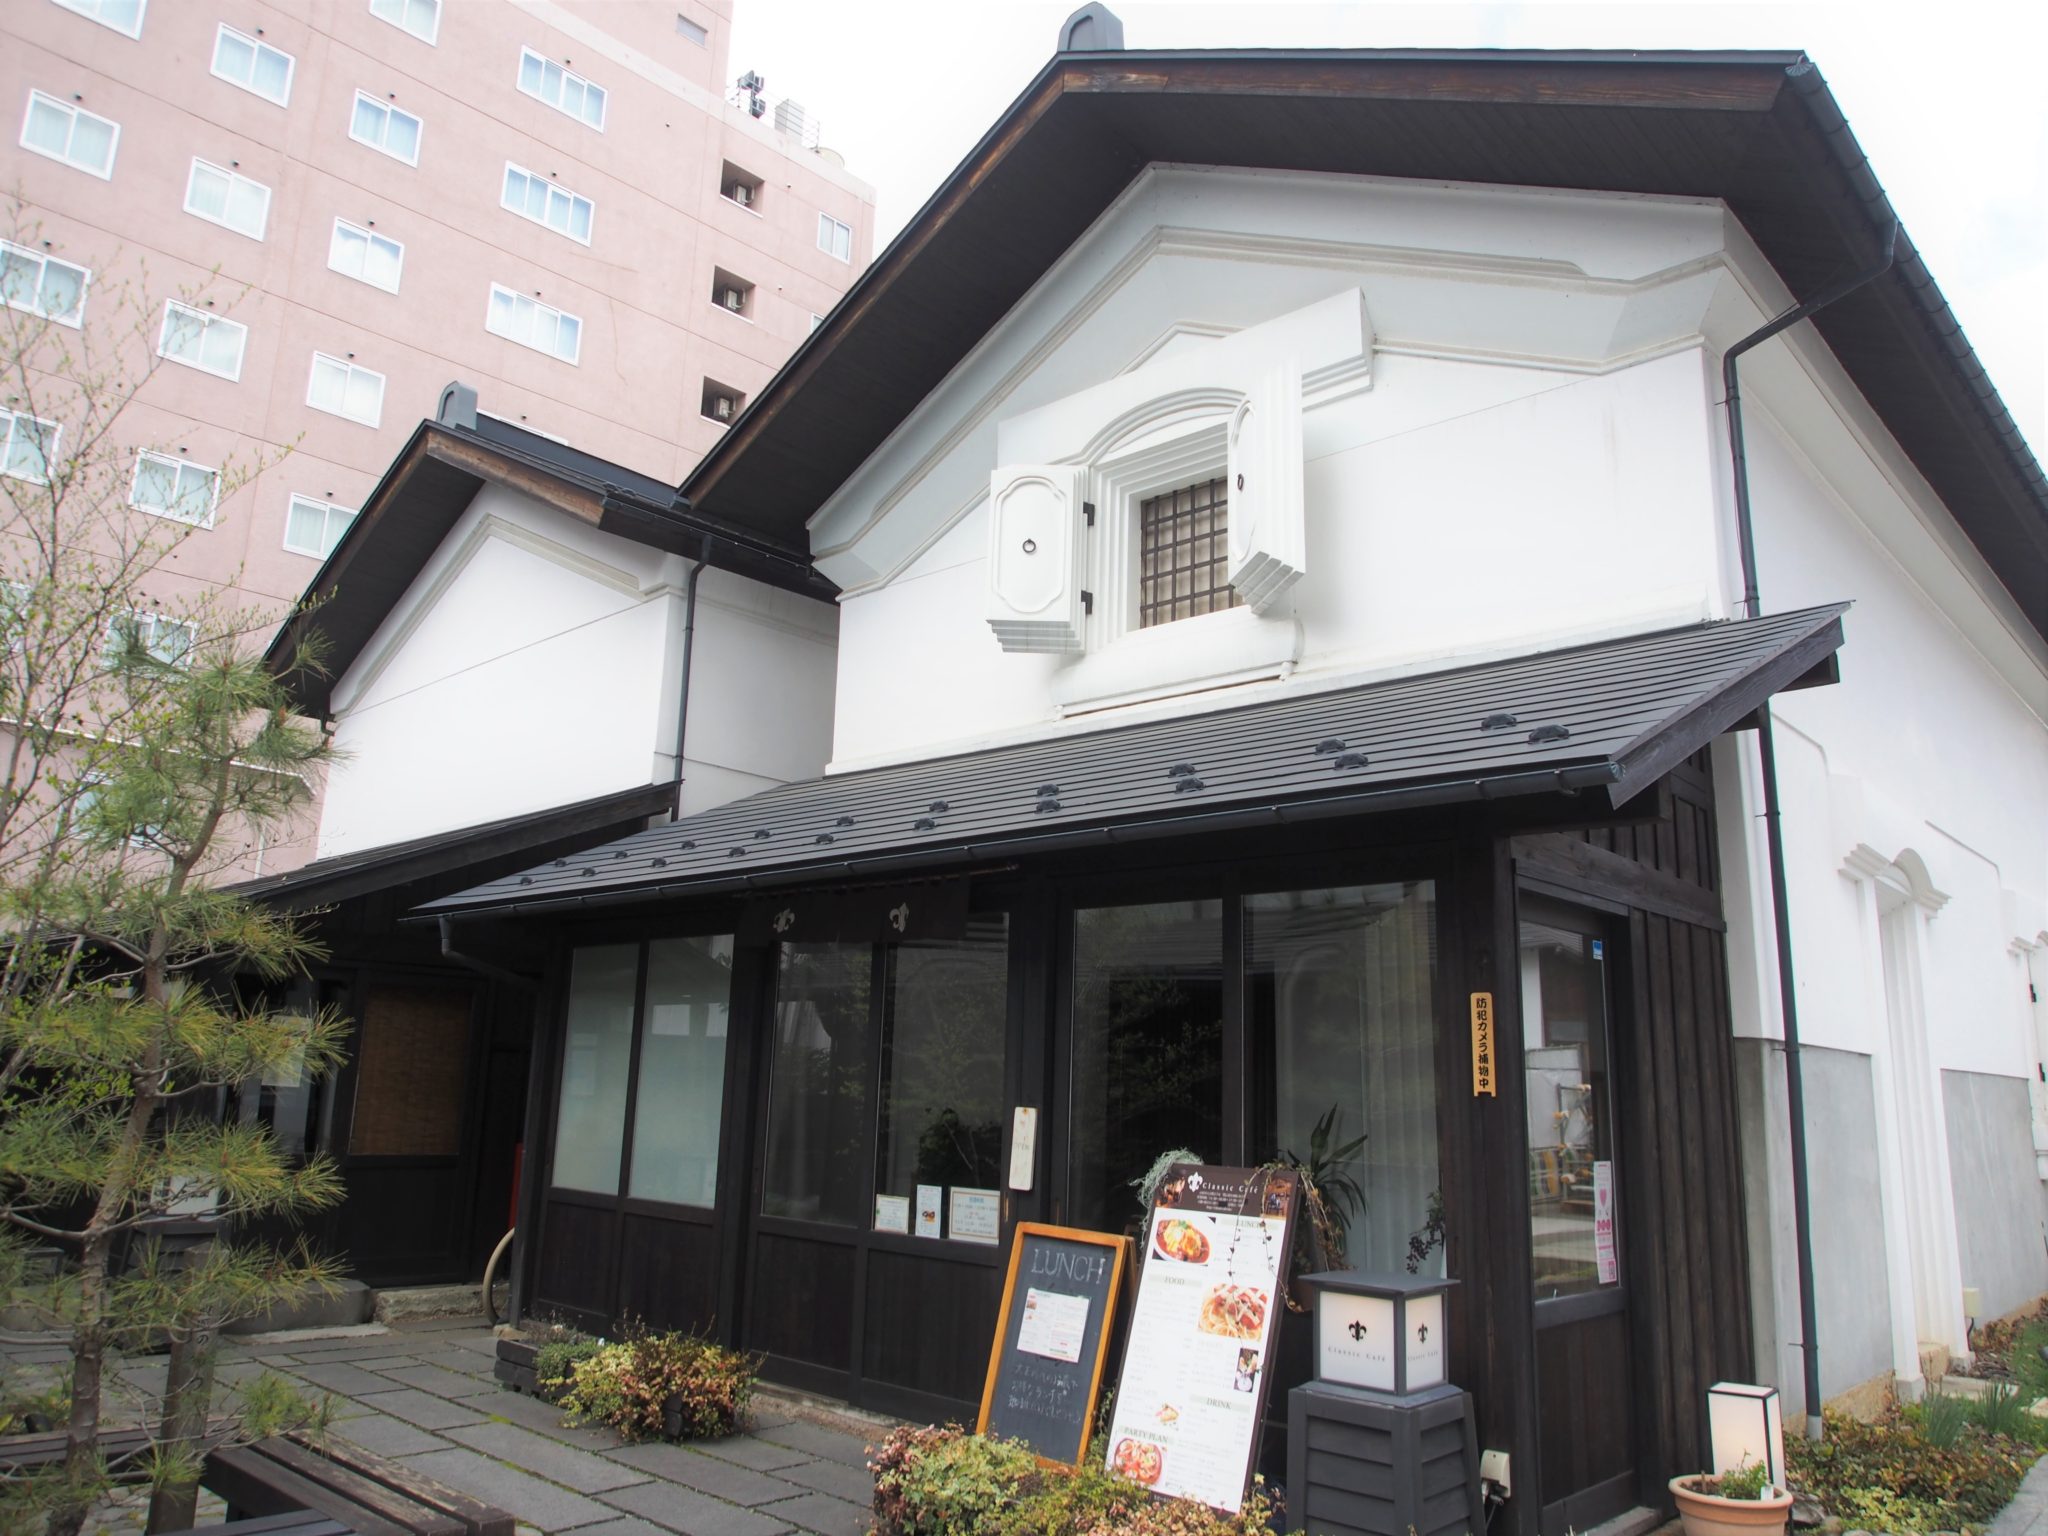 特集記事 七日町御殿堰 クラシックカフェ 趣ある蔵カフェでくつろぎのひとときを Visit Yamagata